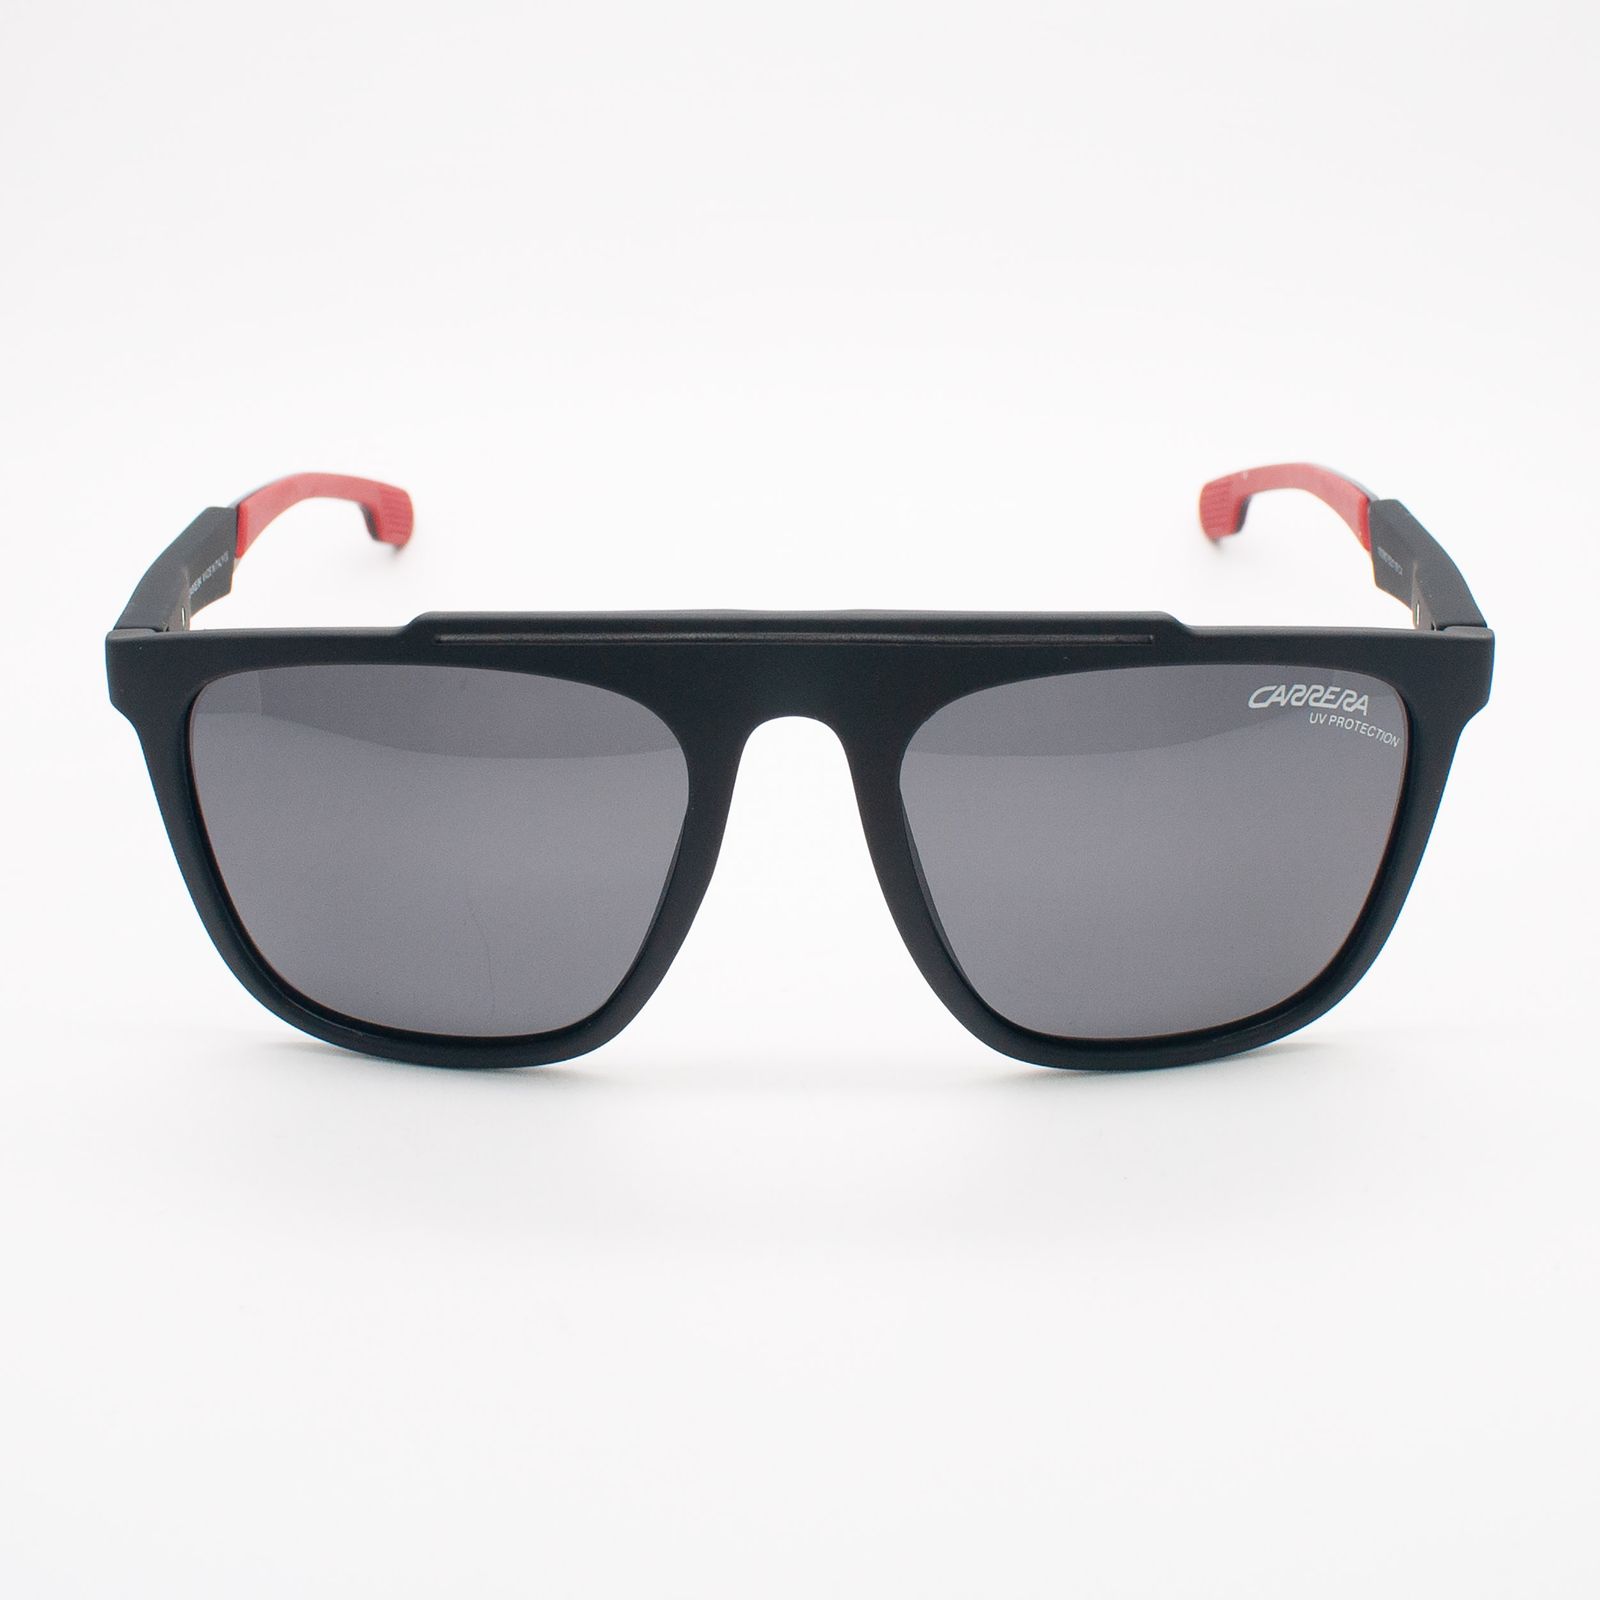 عینک آفتابی کاررا مدل 10036 C4 -  - 3